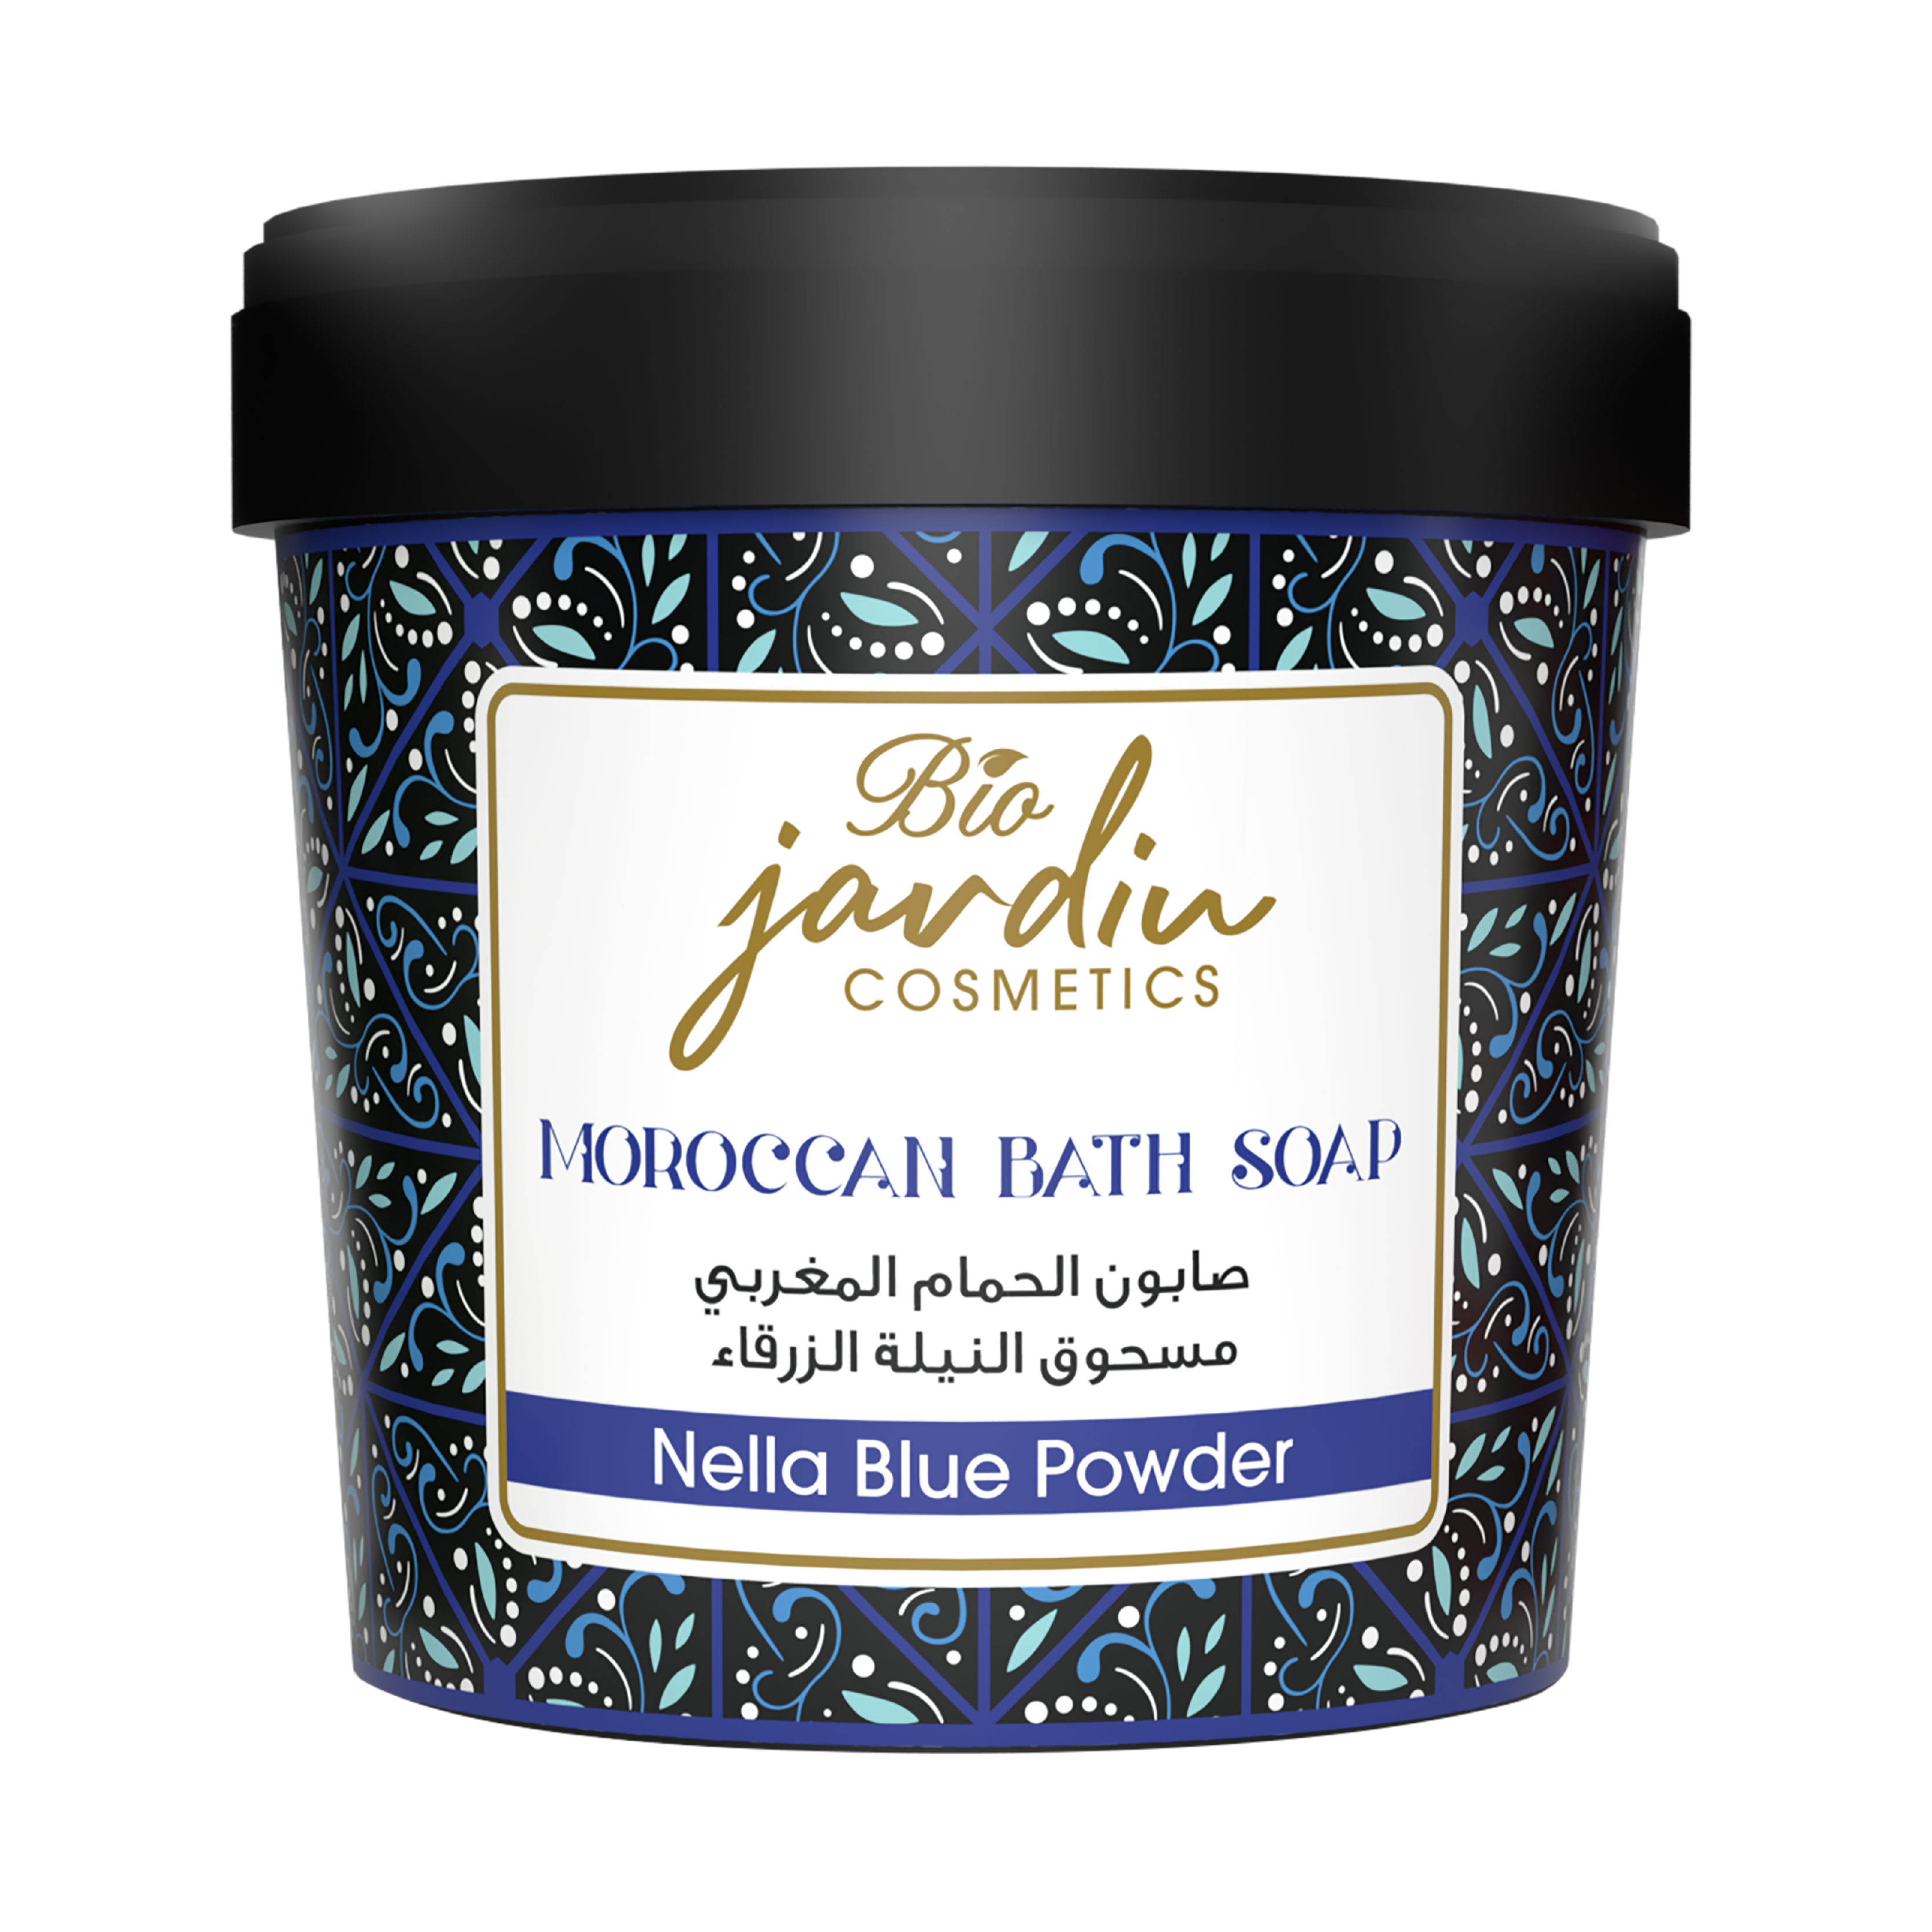 Rejuvenating Nella Blue Powder Moroccan Soap